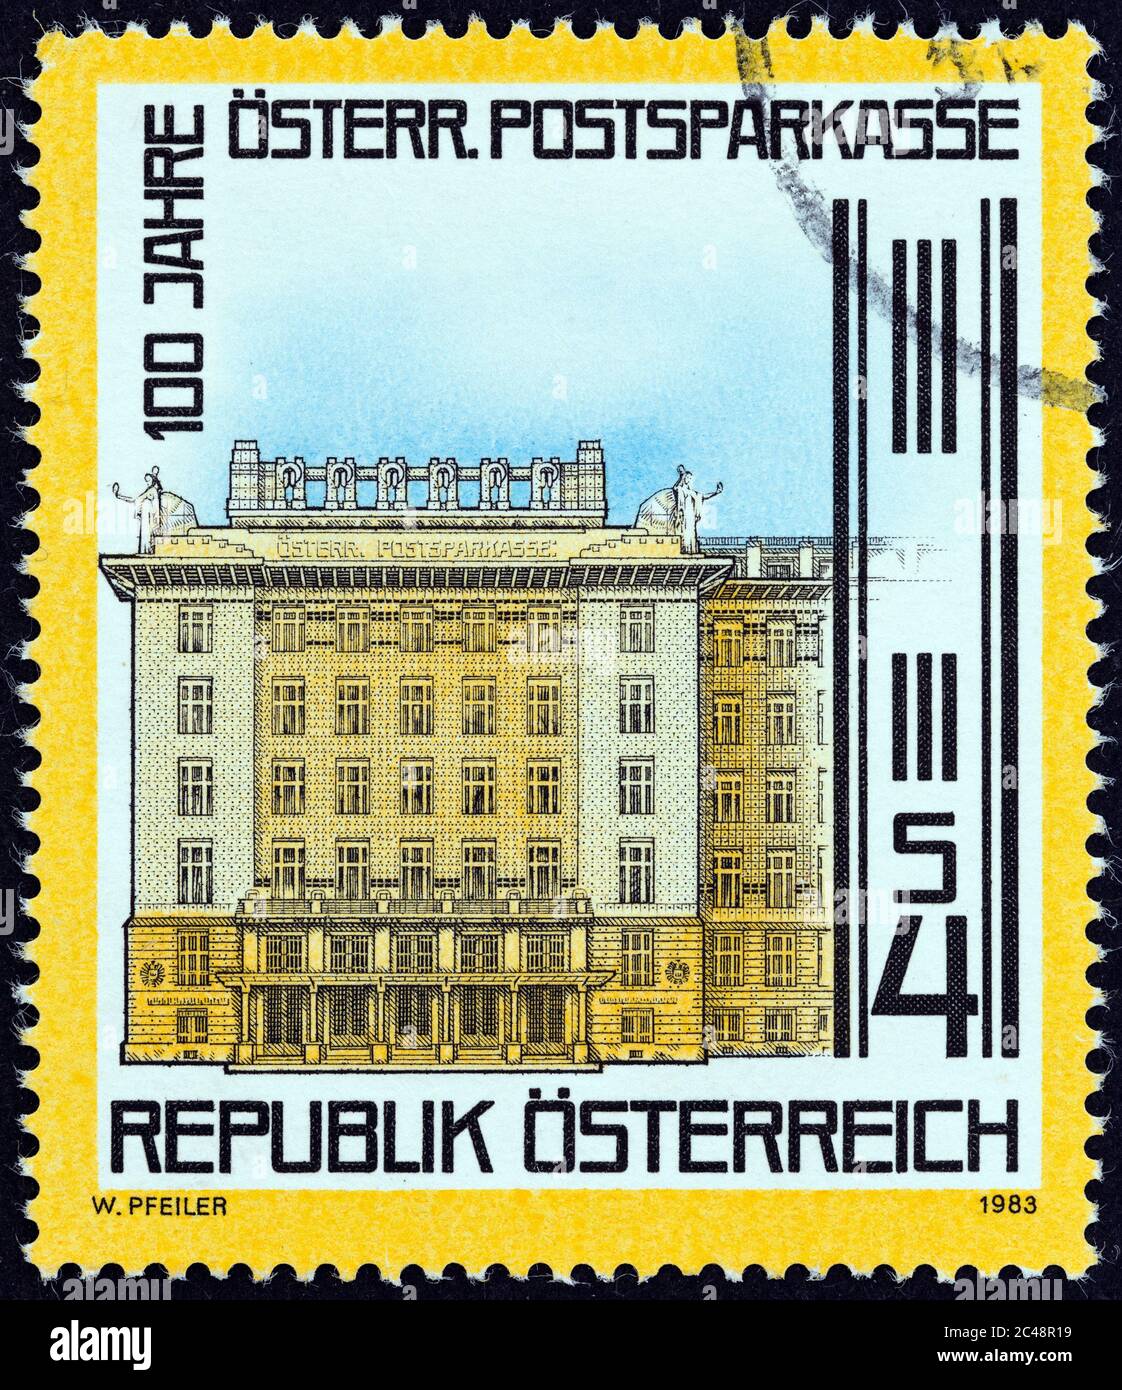 ÖSTERREICH - UM 1983: Eine in Österreich gedruckte Briefmarke, die zum 100. Jahrestag der Postsparkasse Bank, Wien, um 1983 ausgegeben wurde. Stockfoto